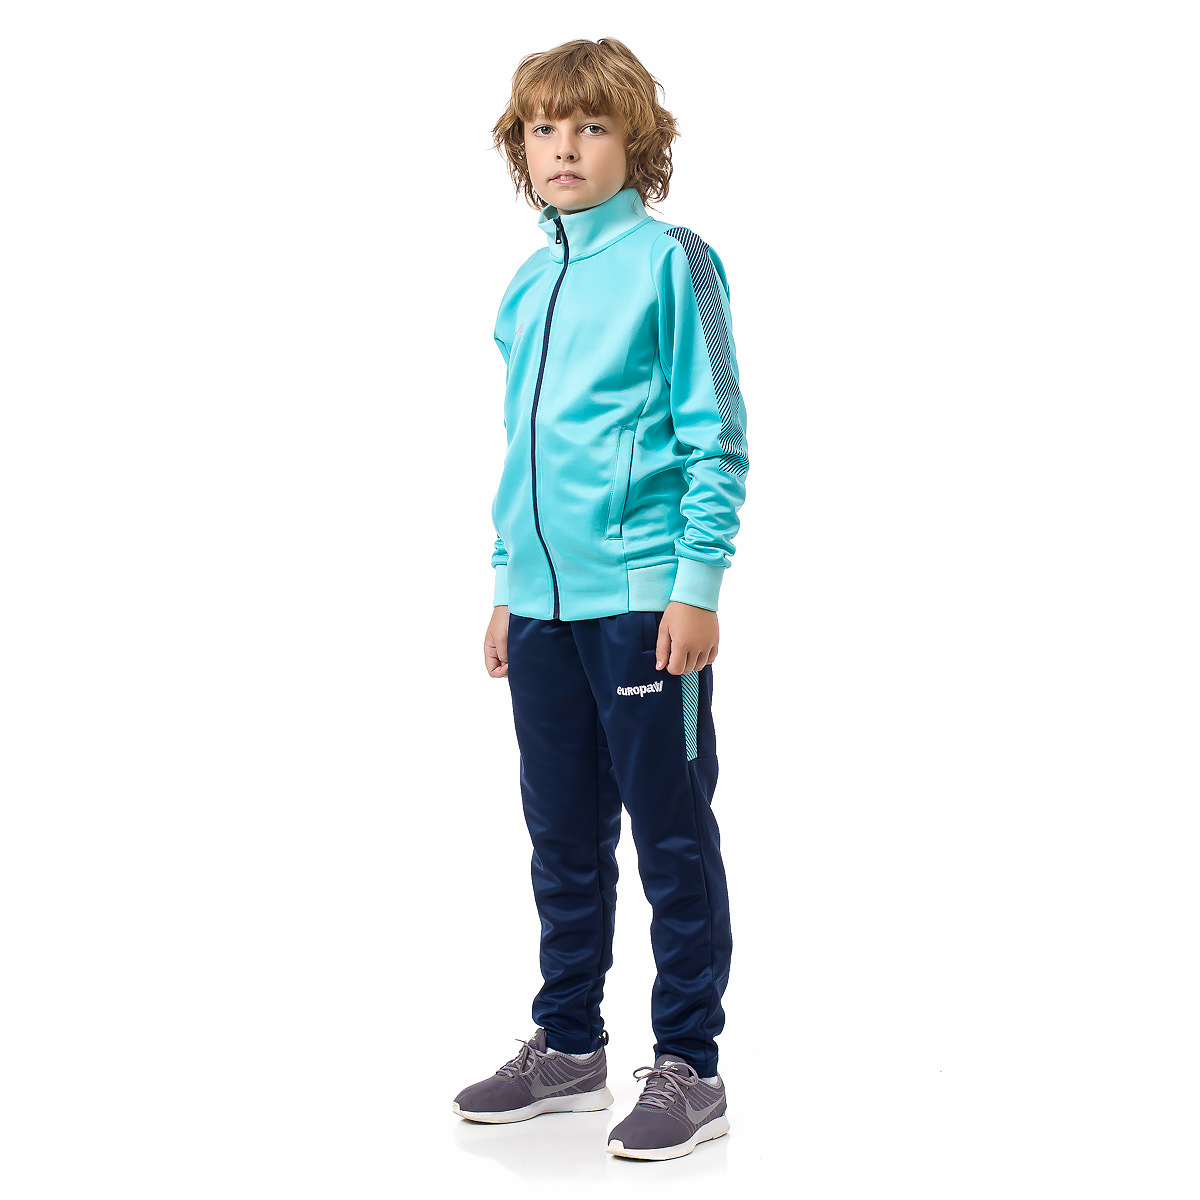 Спортивный костюм для детей Europaw Limber Up Kid 2101 Long zipper